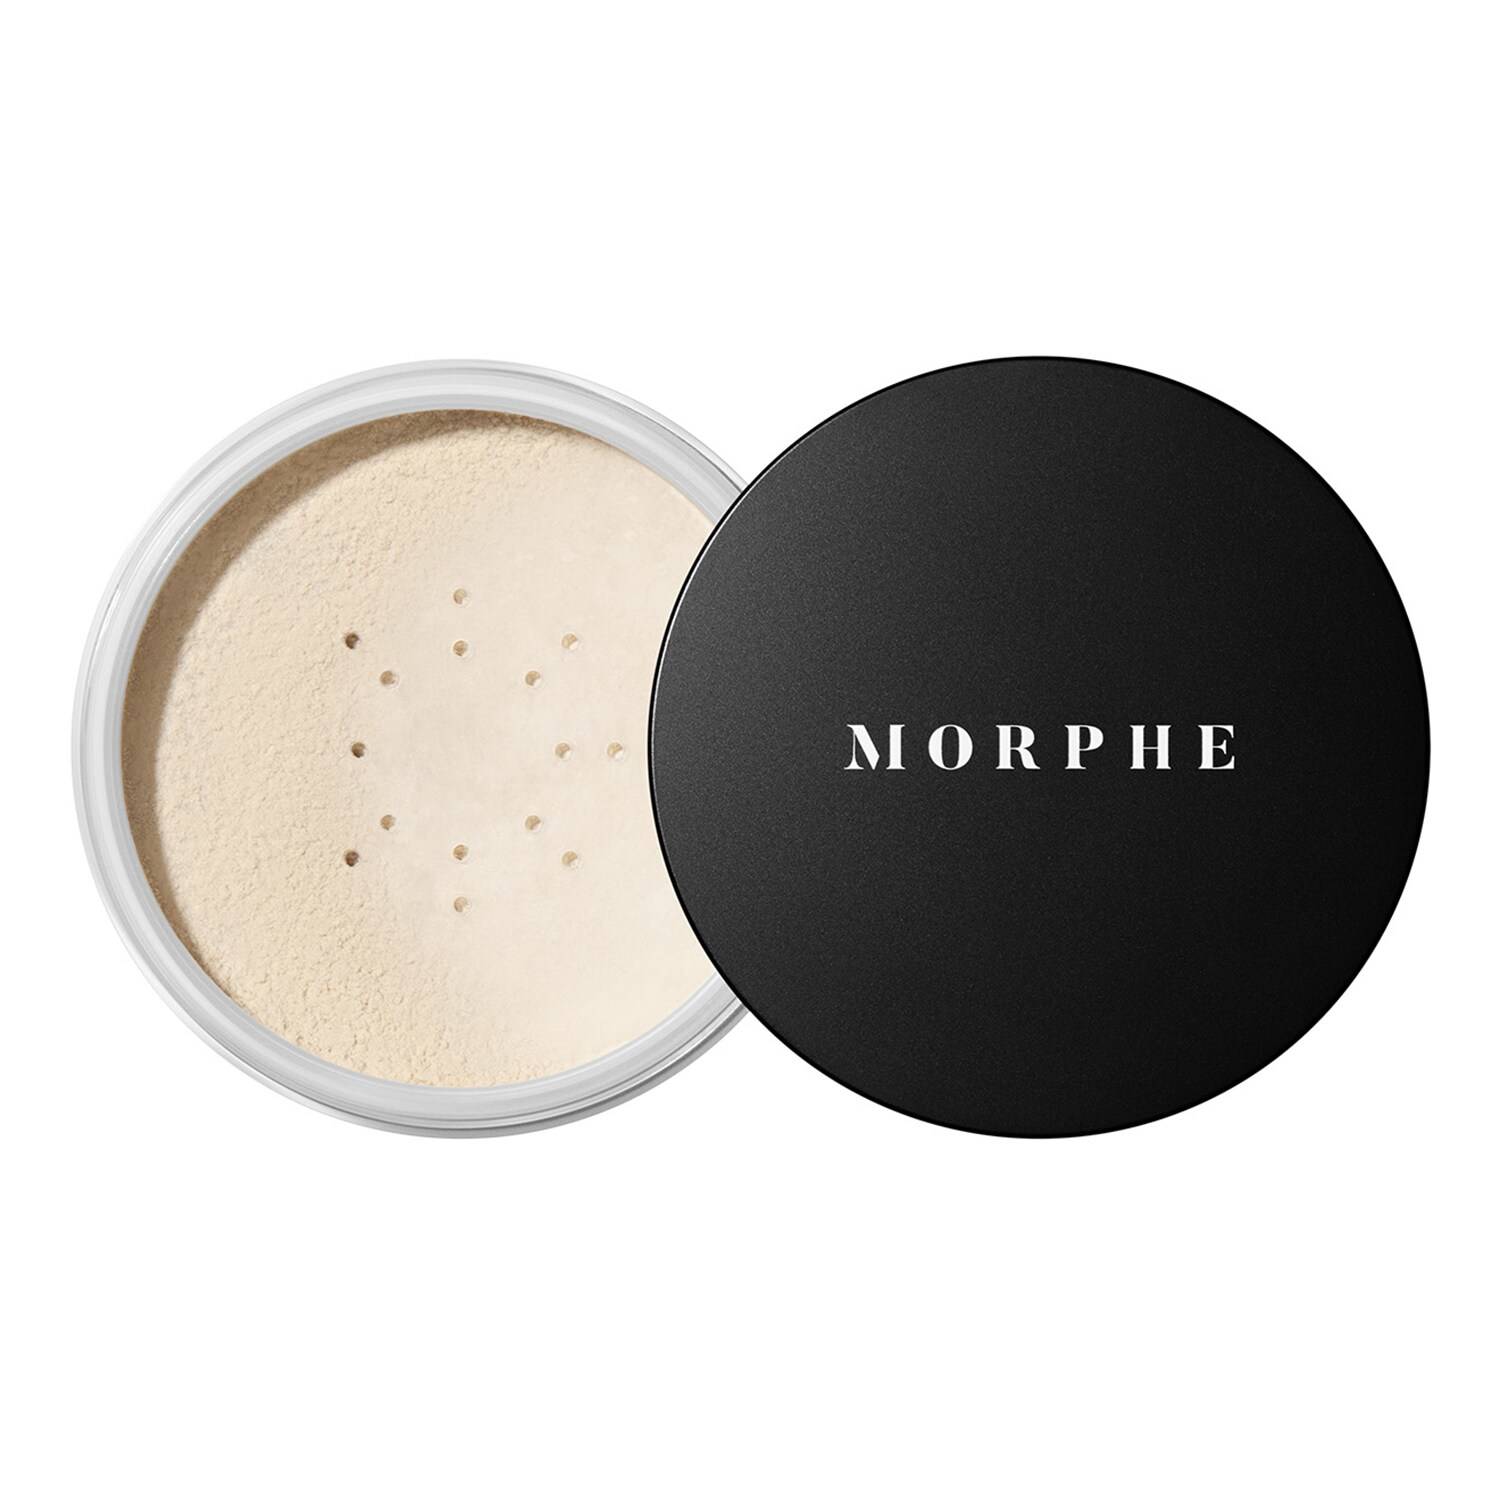 Morphe Jumbo Bake & Set Soft Focus Setting Powder 17.5G